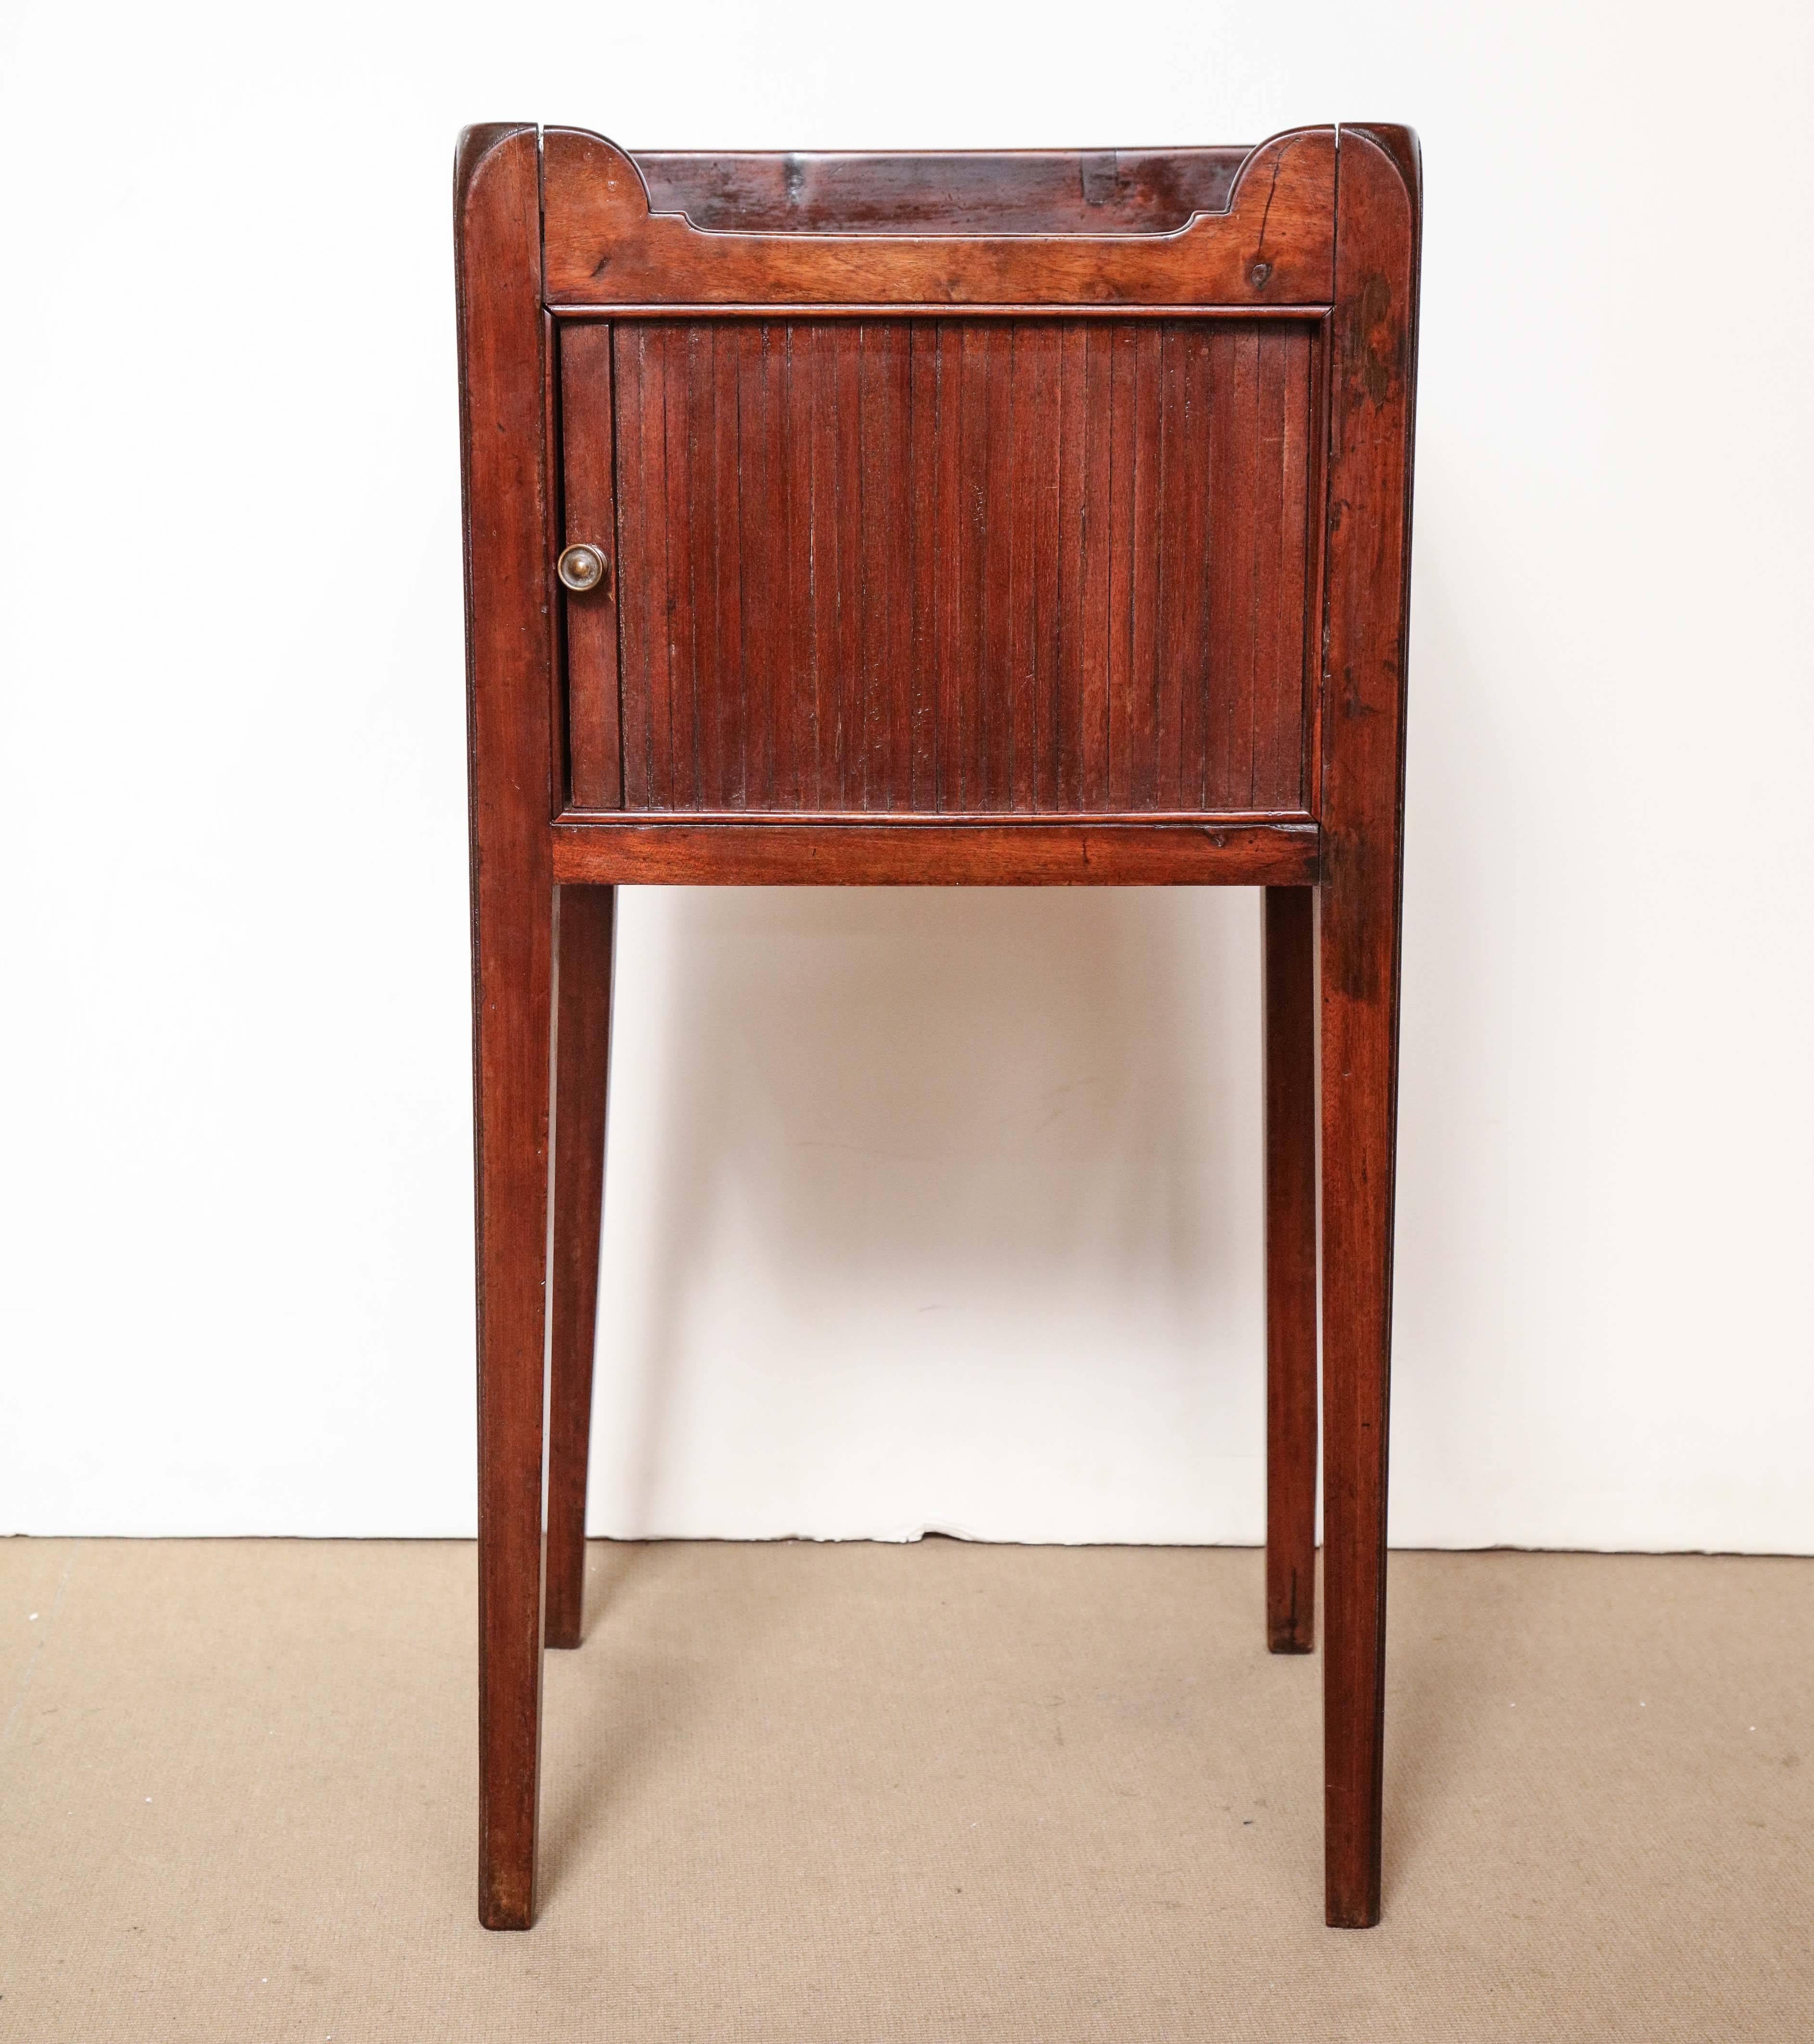 Early 19th century English, Tambour door mahogany table.